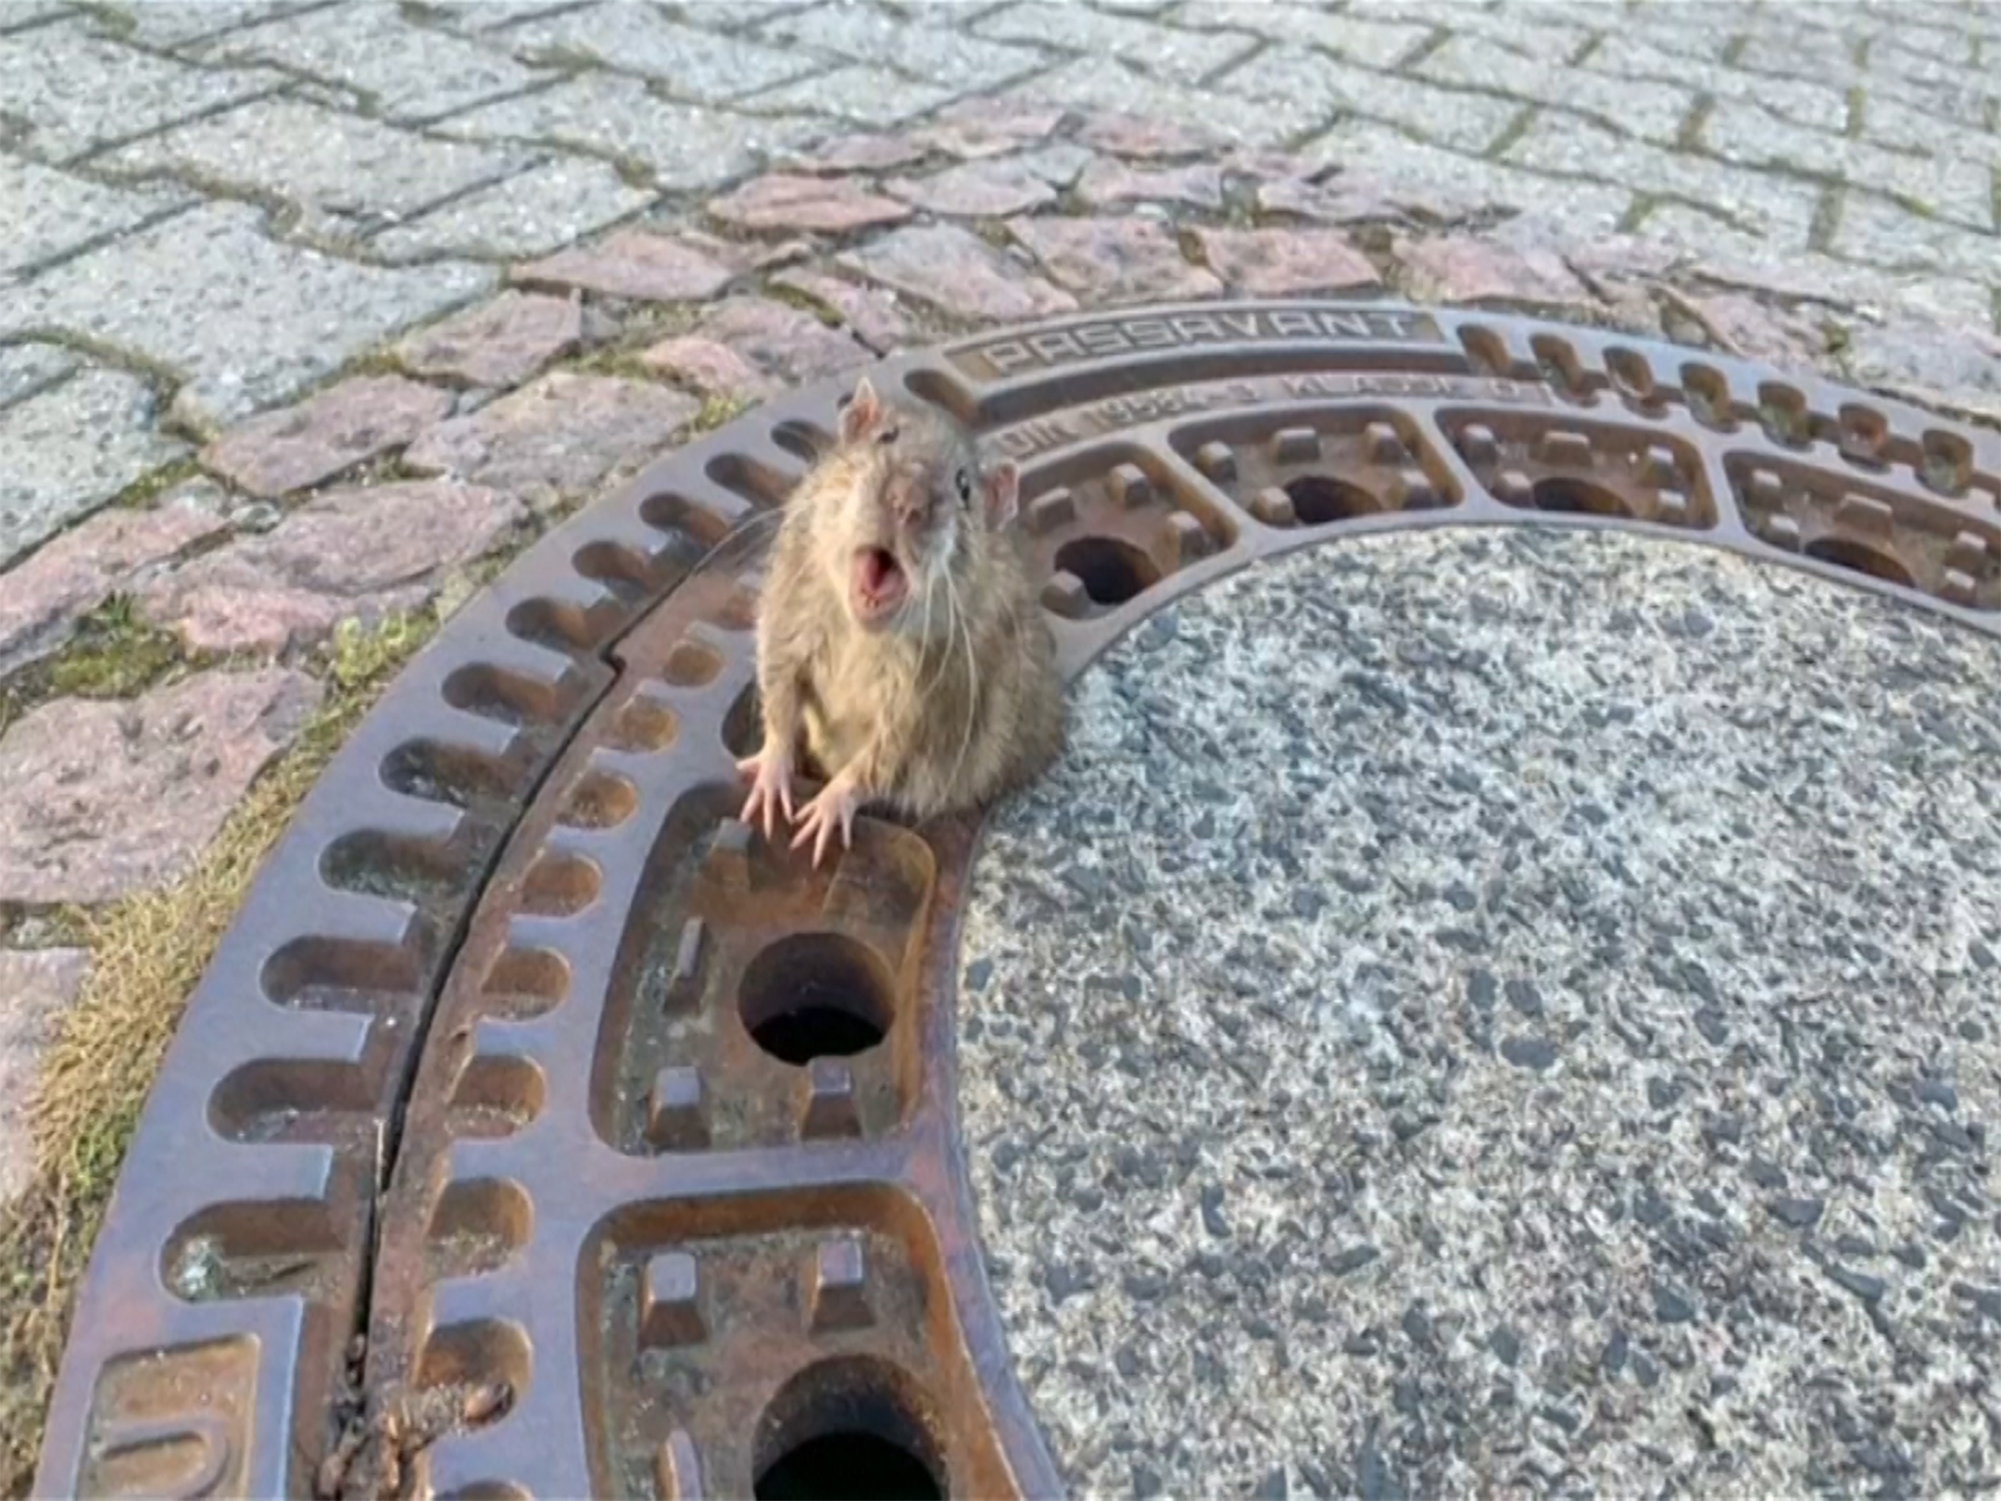 Rata 'gordinha' é salva após ficar entalada em bueiro na Alemanha